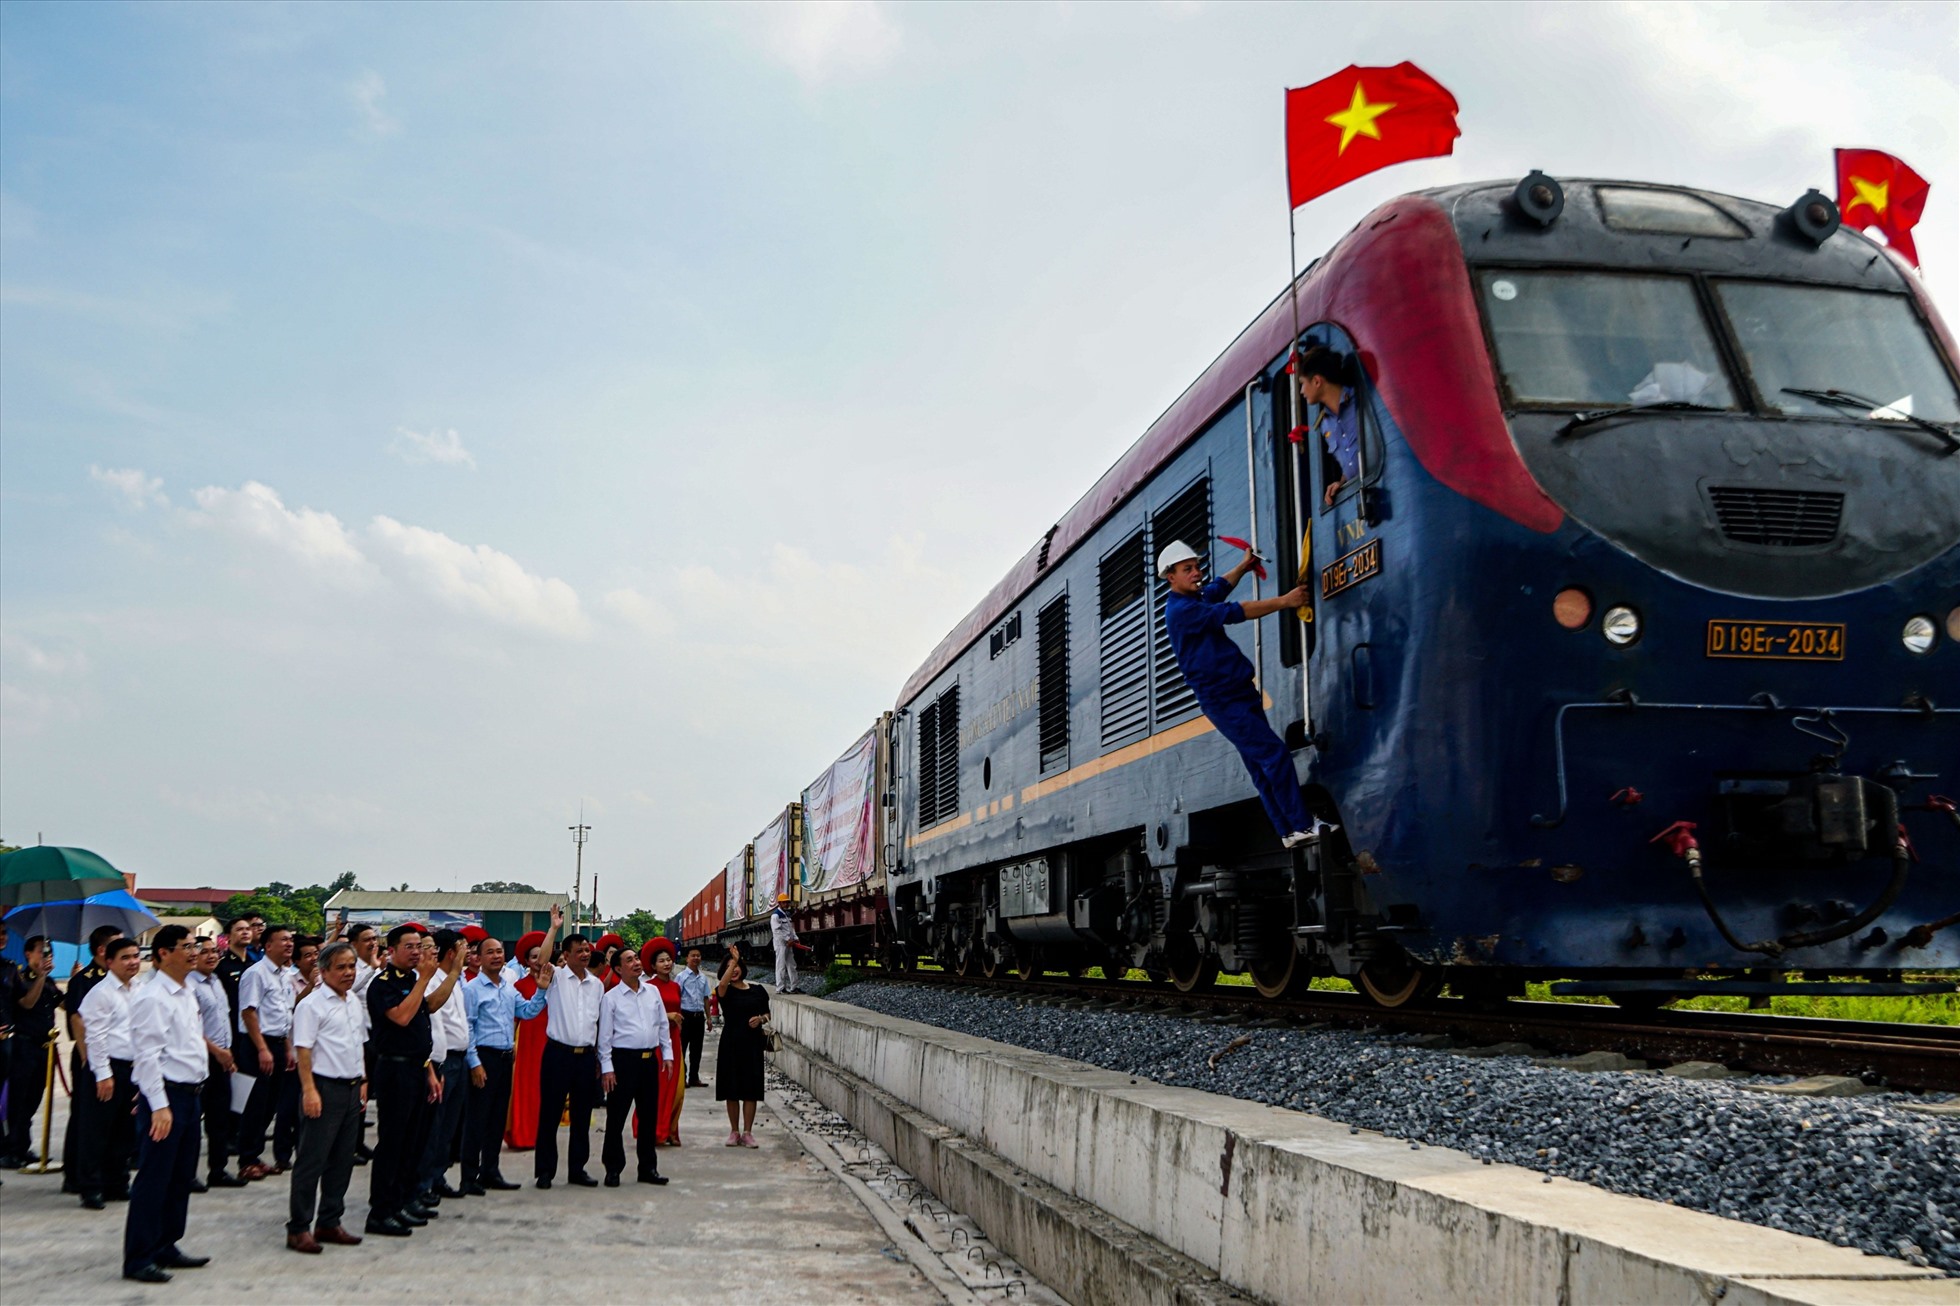 Lãnh đạo địa phương tiễn đoàn tàu vận chuyển vải thiều Lục Ngạn đầu tiên xuất khẩu chính ngạch bằng đường sắt sang Trung Quốc. Ảnh: THƠM GIANG